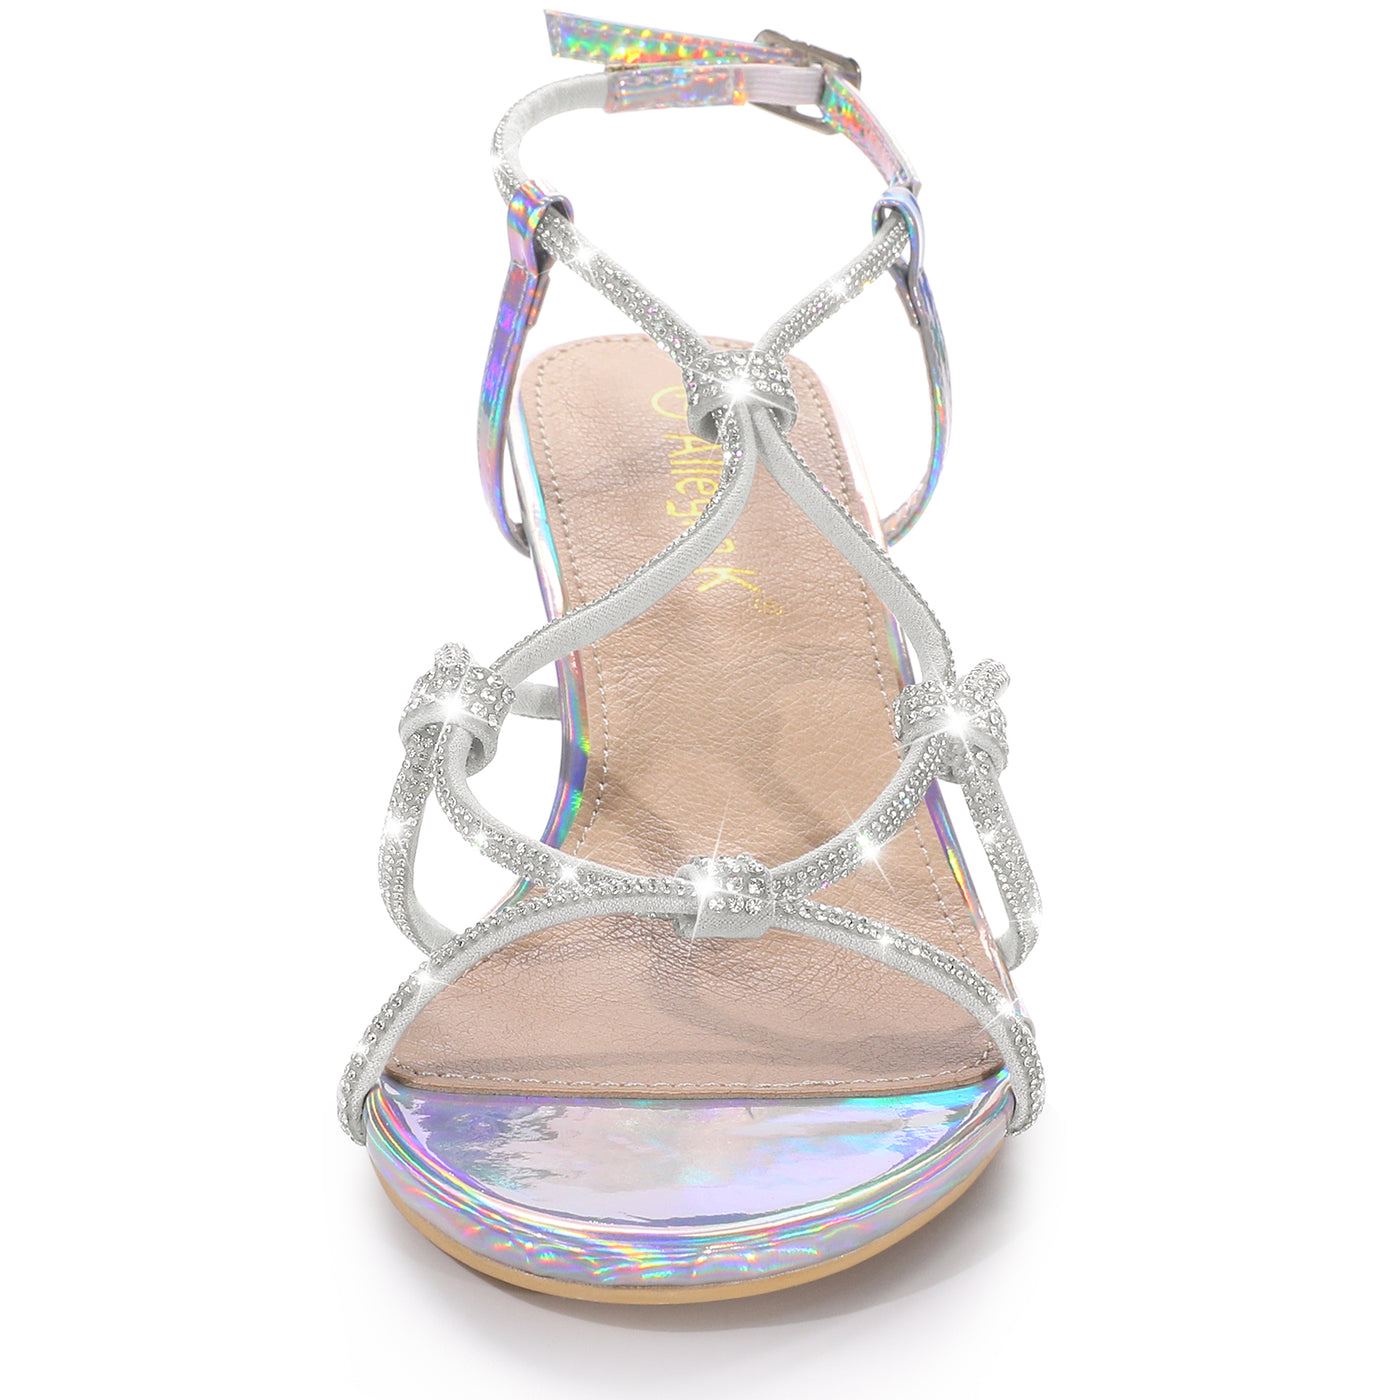 Allegra K Women's Rhinestone Strappy Slingback Kitten Heel Sandals